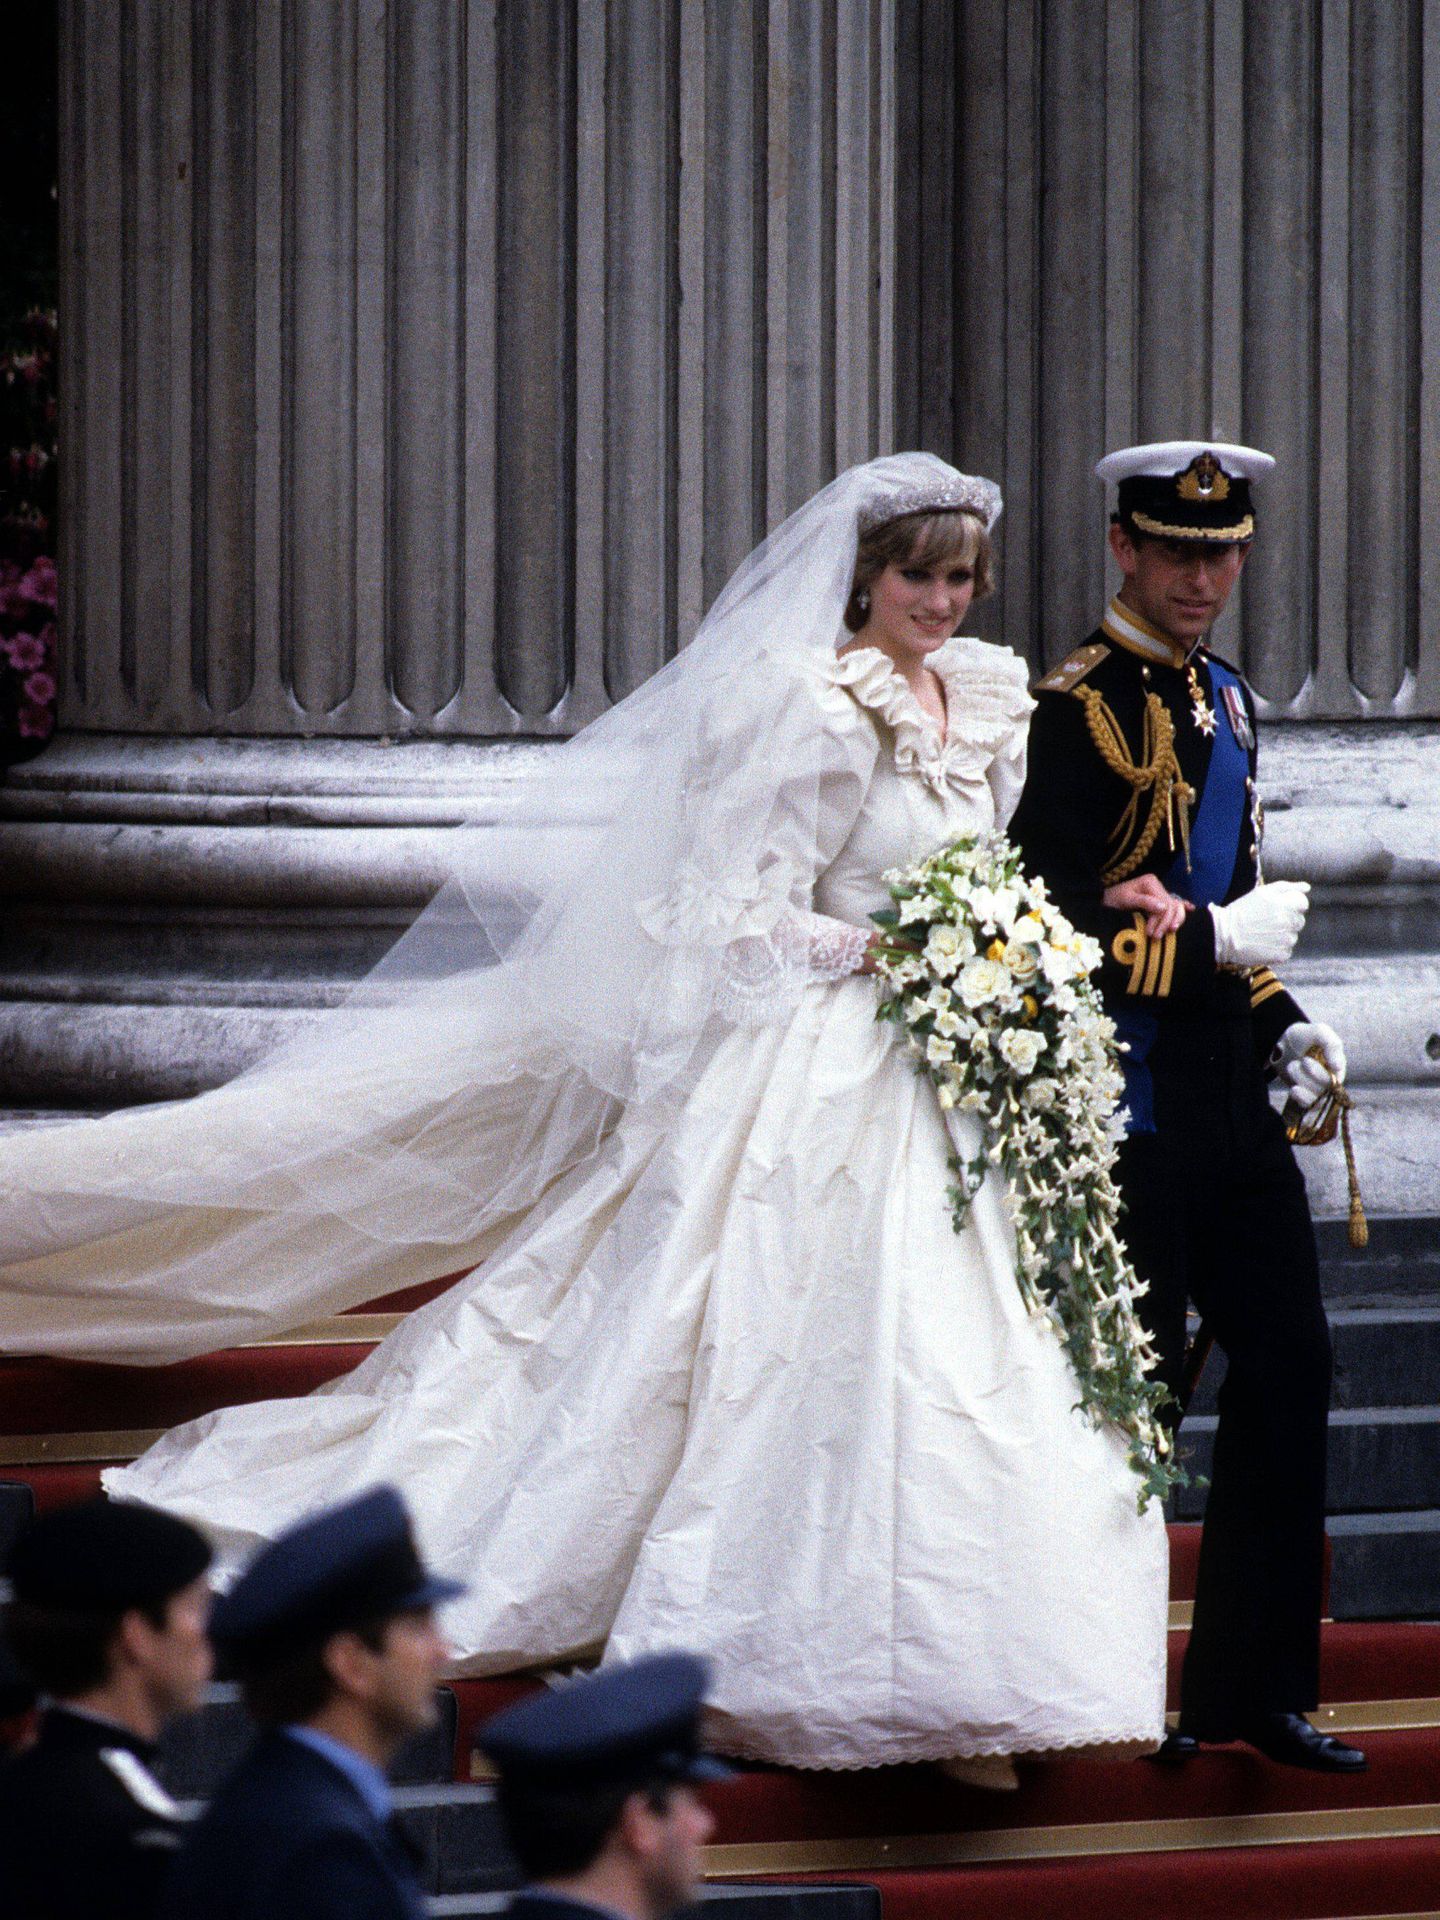 La boda de Carlos y Diana de Gales. (Archivo)